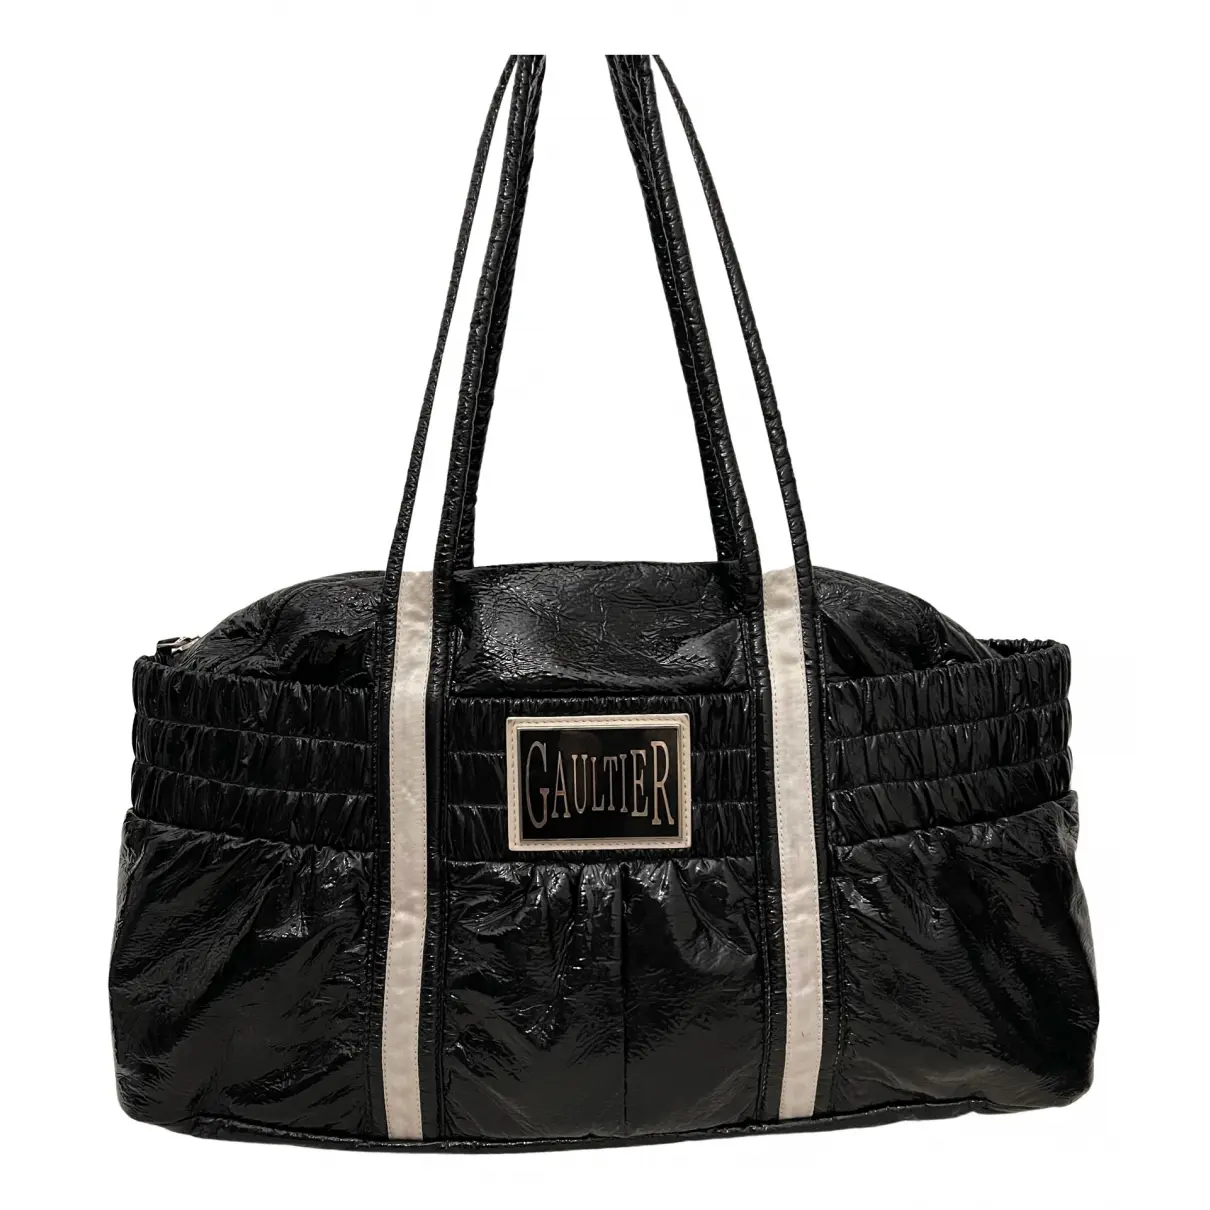 Patent leather handbag Jean Paul Gaultier